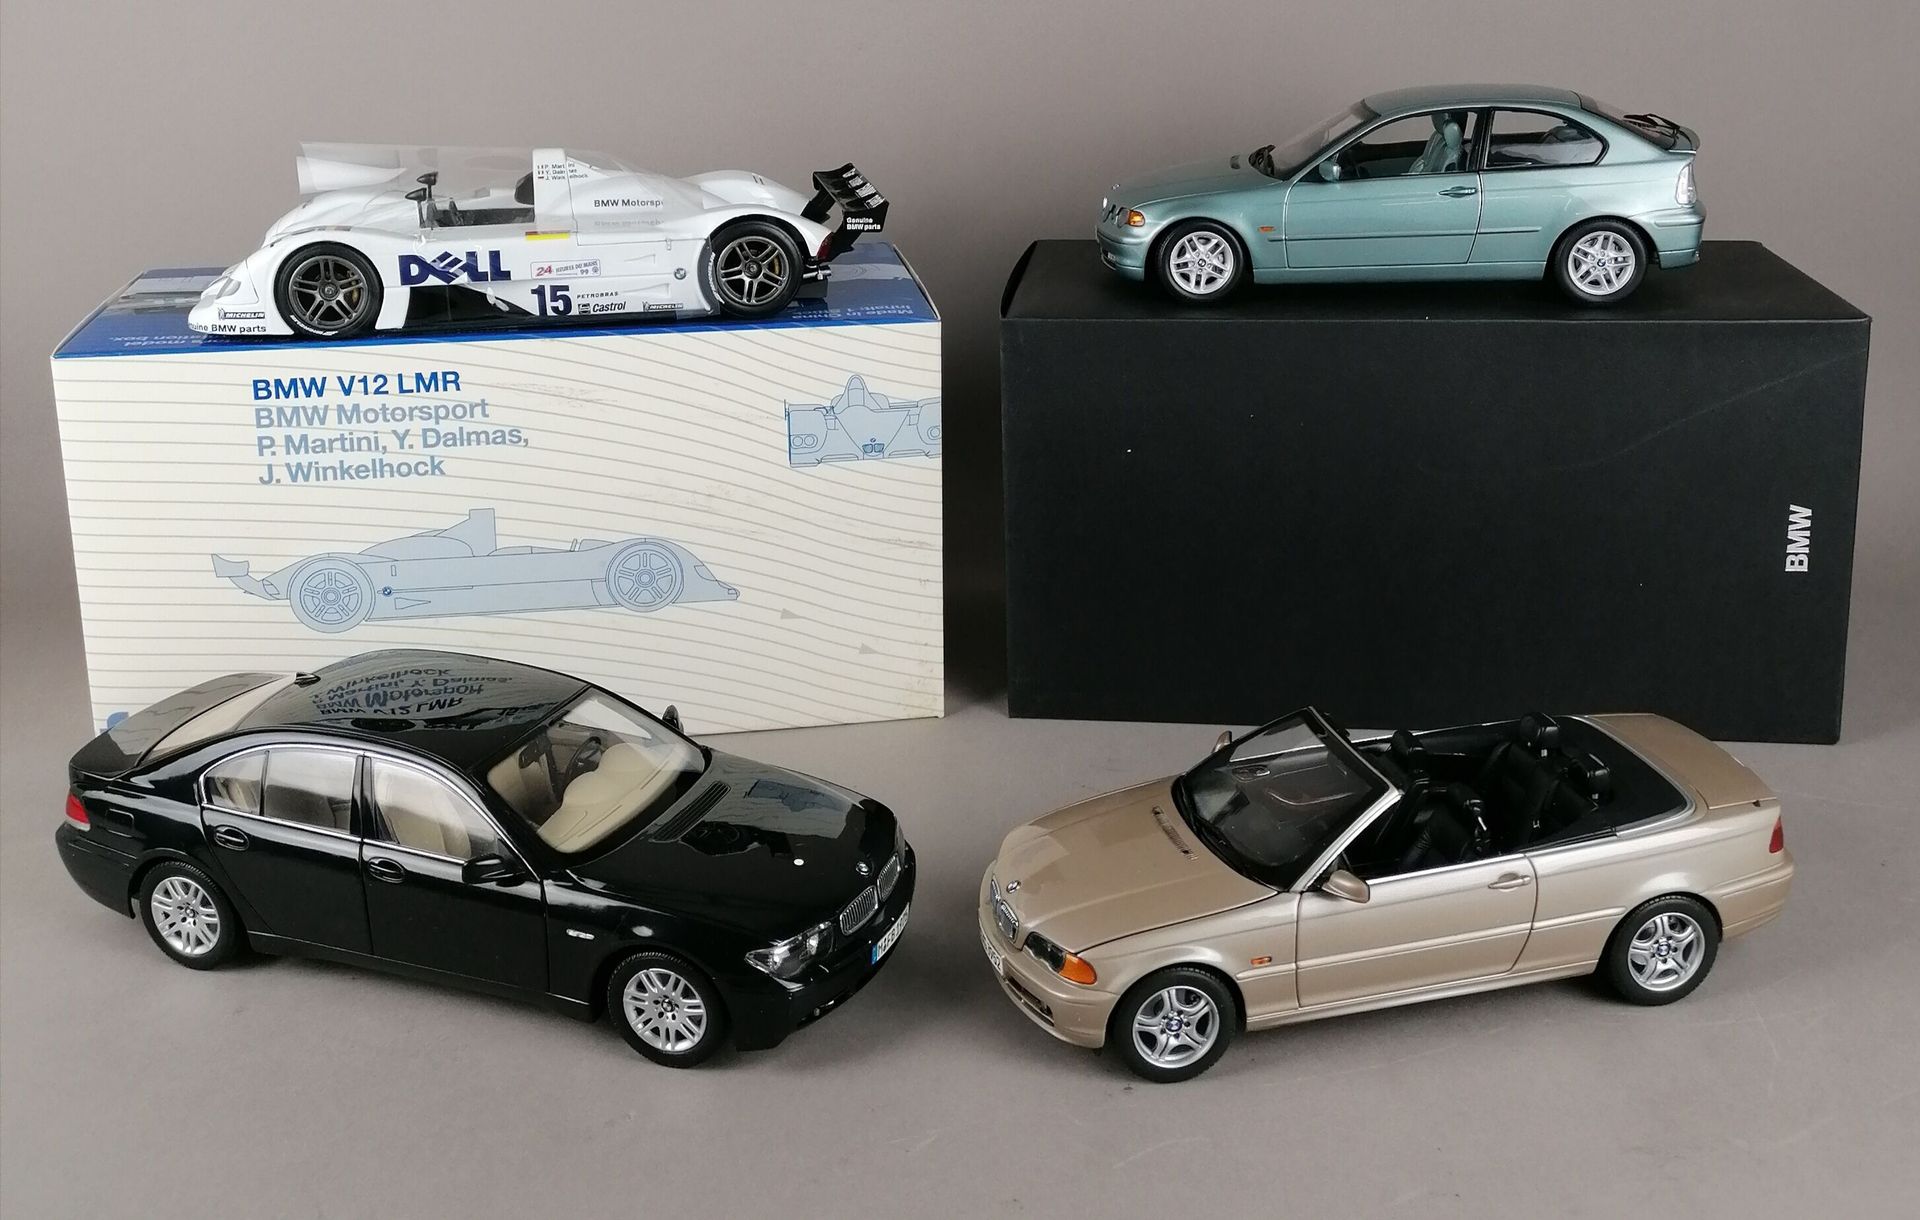 Null BMW - CUATRO BMW a escala 1/18:

1x V12 LMR

1x Serie 7

1x 325Ti Compact

&hellip;